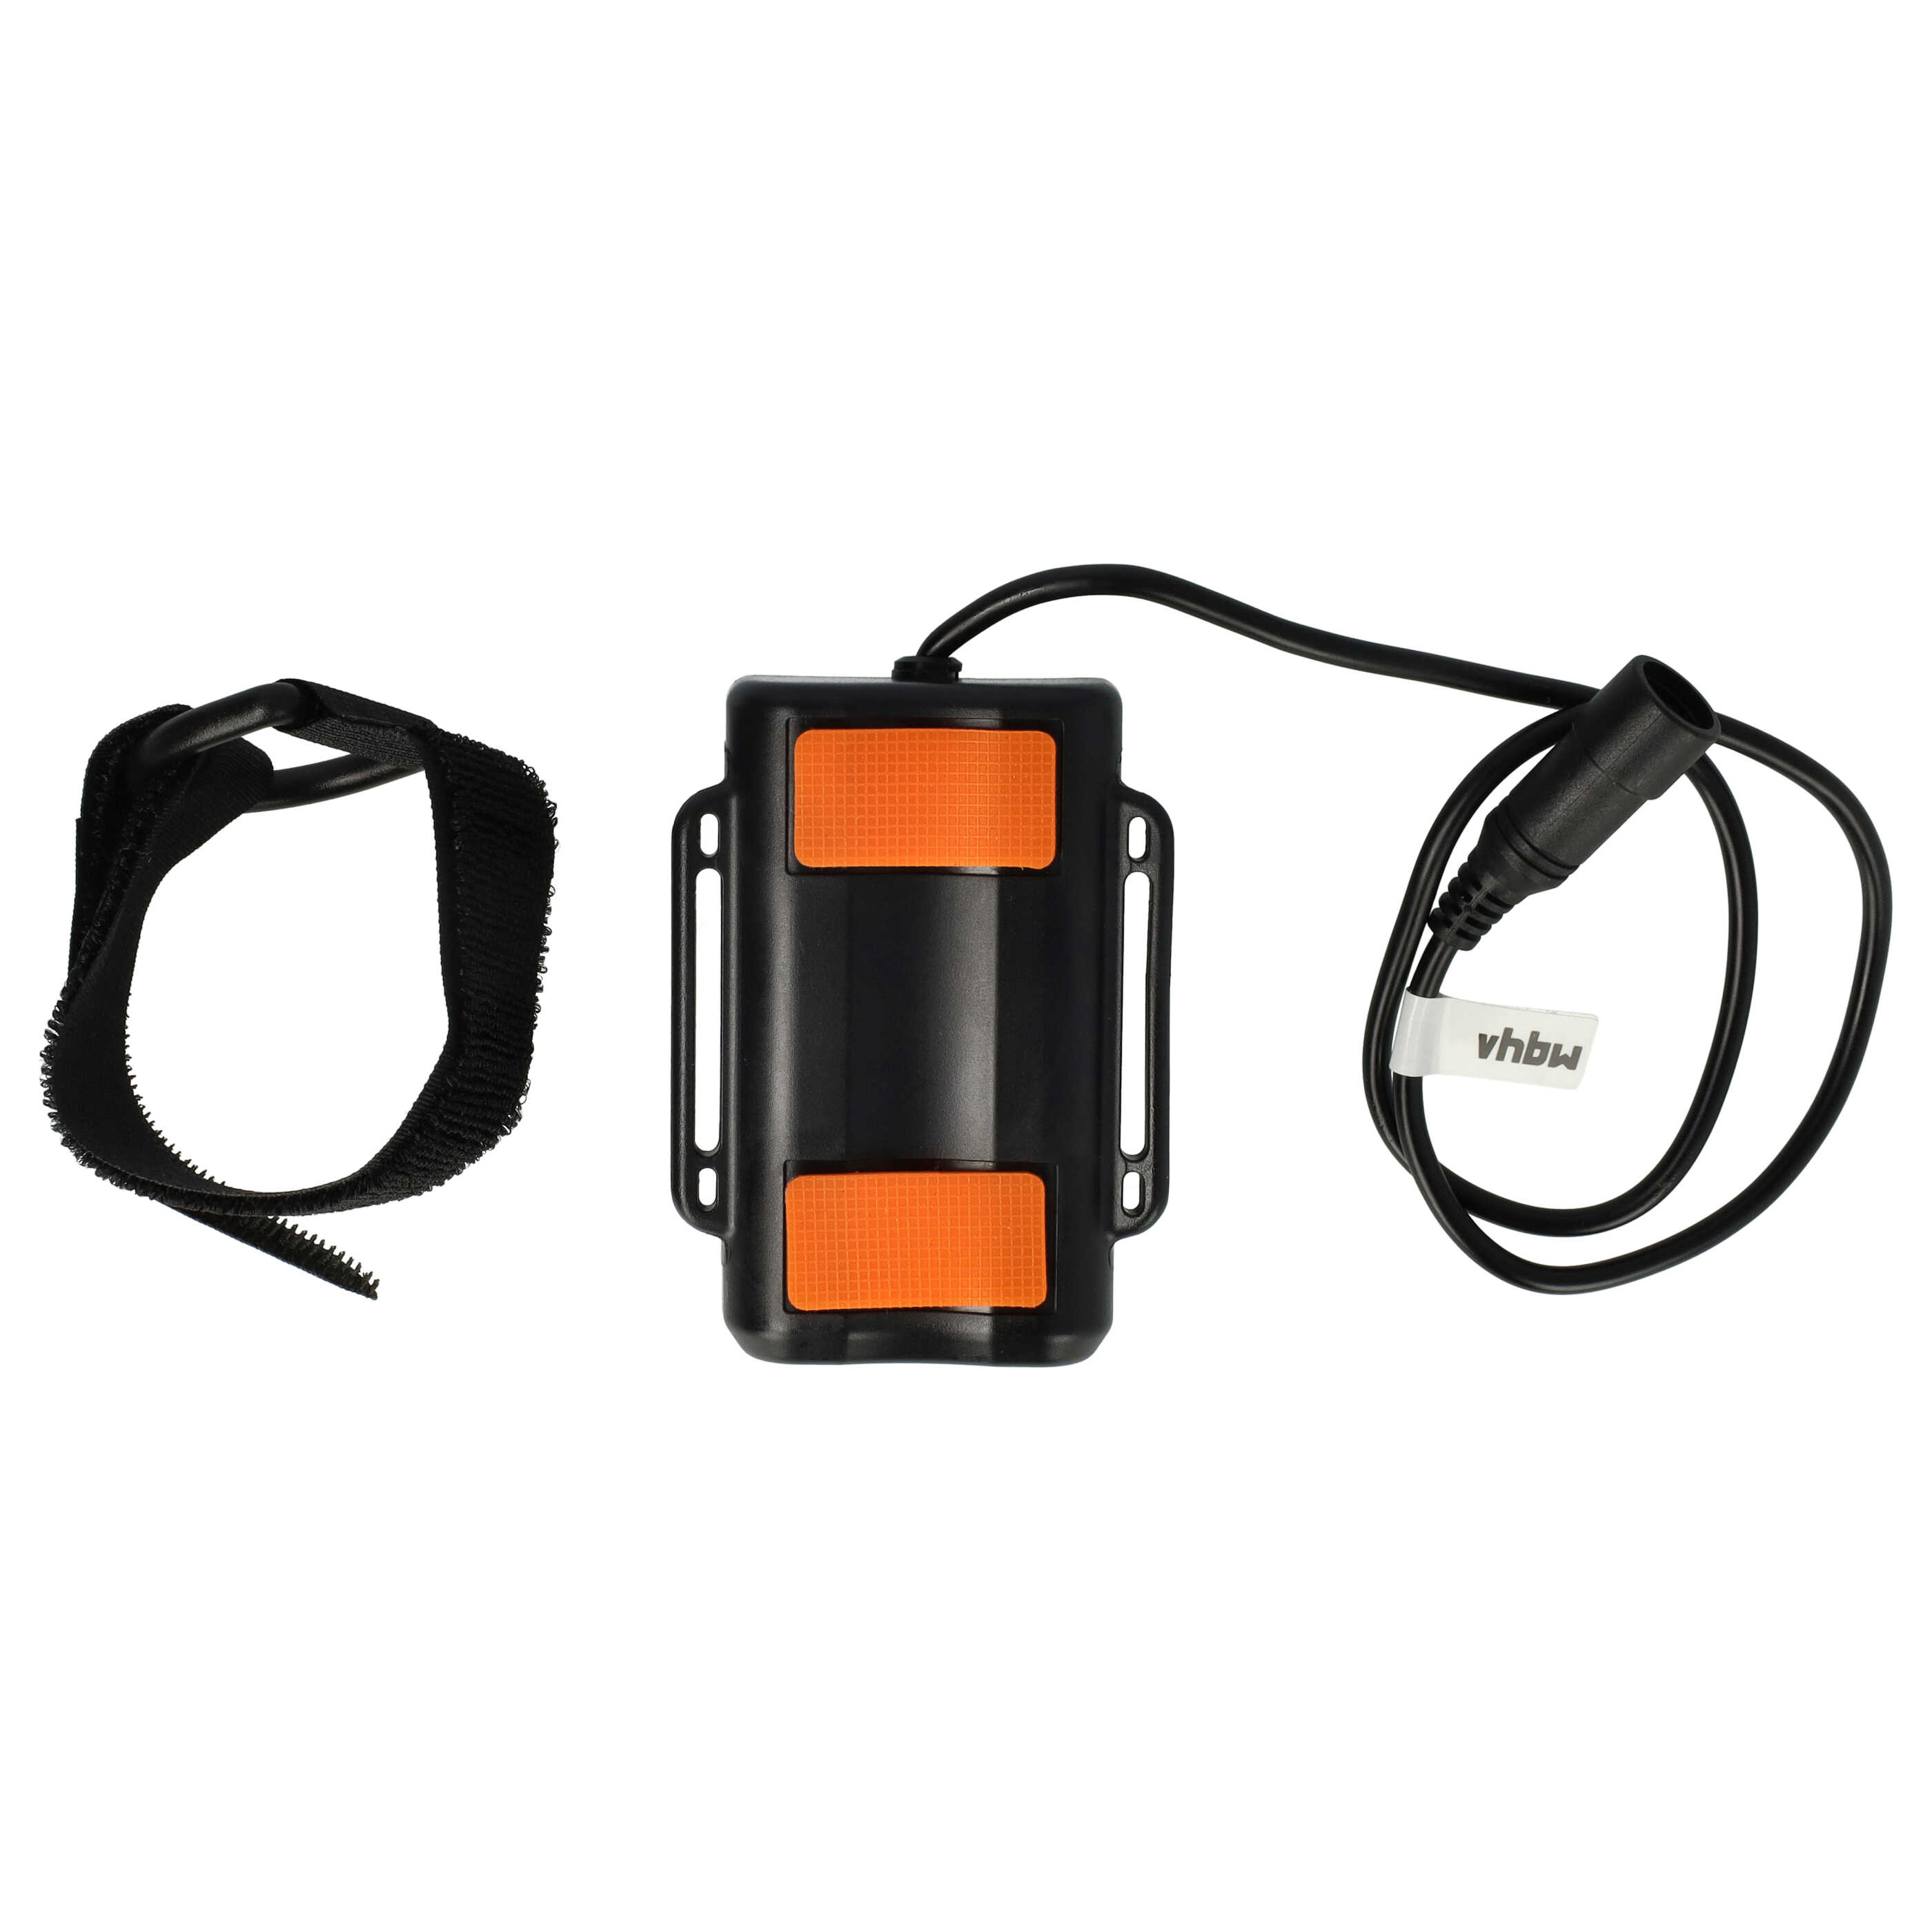 Pacco batteria + caricatore per faretto per biciclette - 6000mAh 8,4V Li-Ion, impermeabile